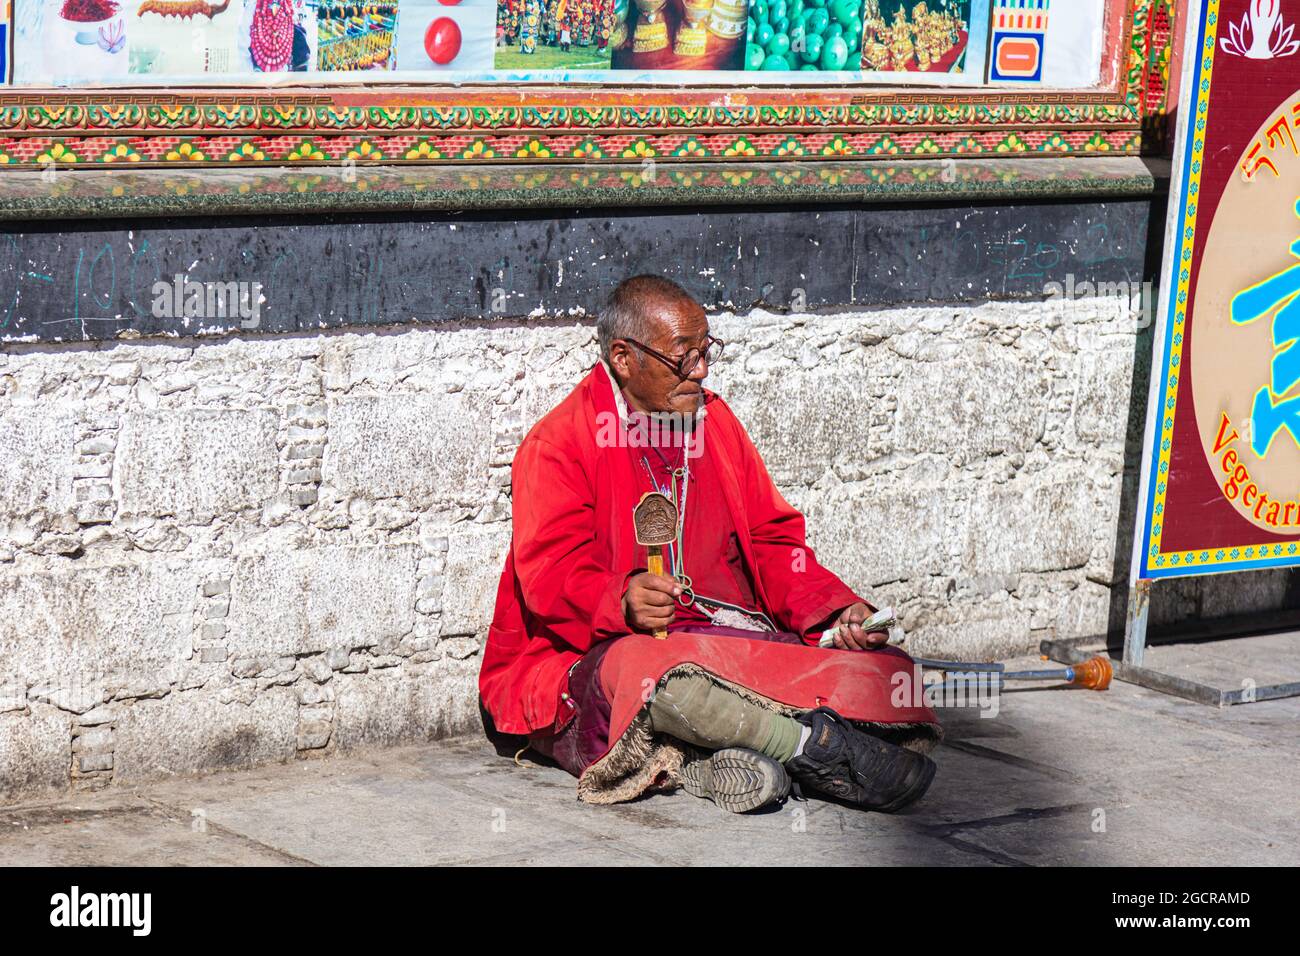 Lhasa, Tibet, China - 15 de noviembre de 2019: Viejo tibetano con muletas y rueda de oración tibetana sentado en el lado de la carretera cerca del templo Jokhang. El Foto de stock